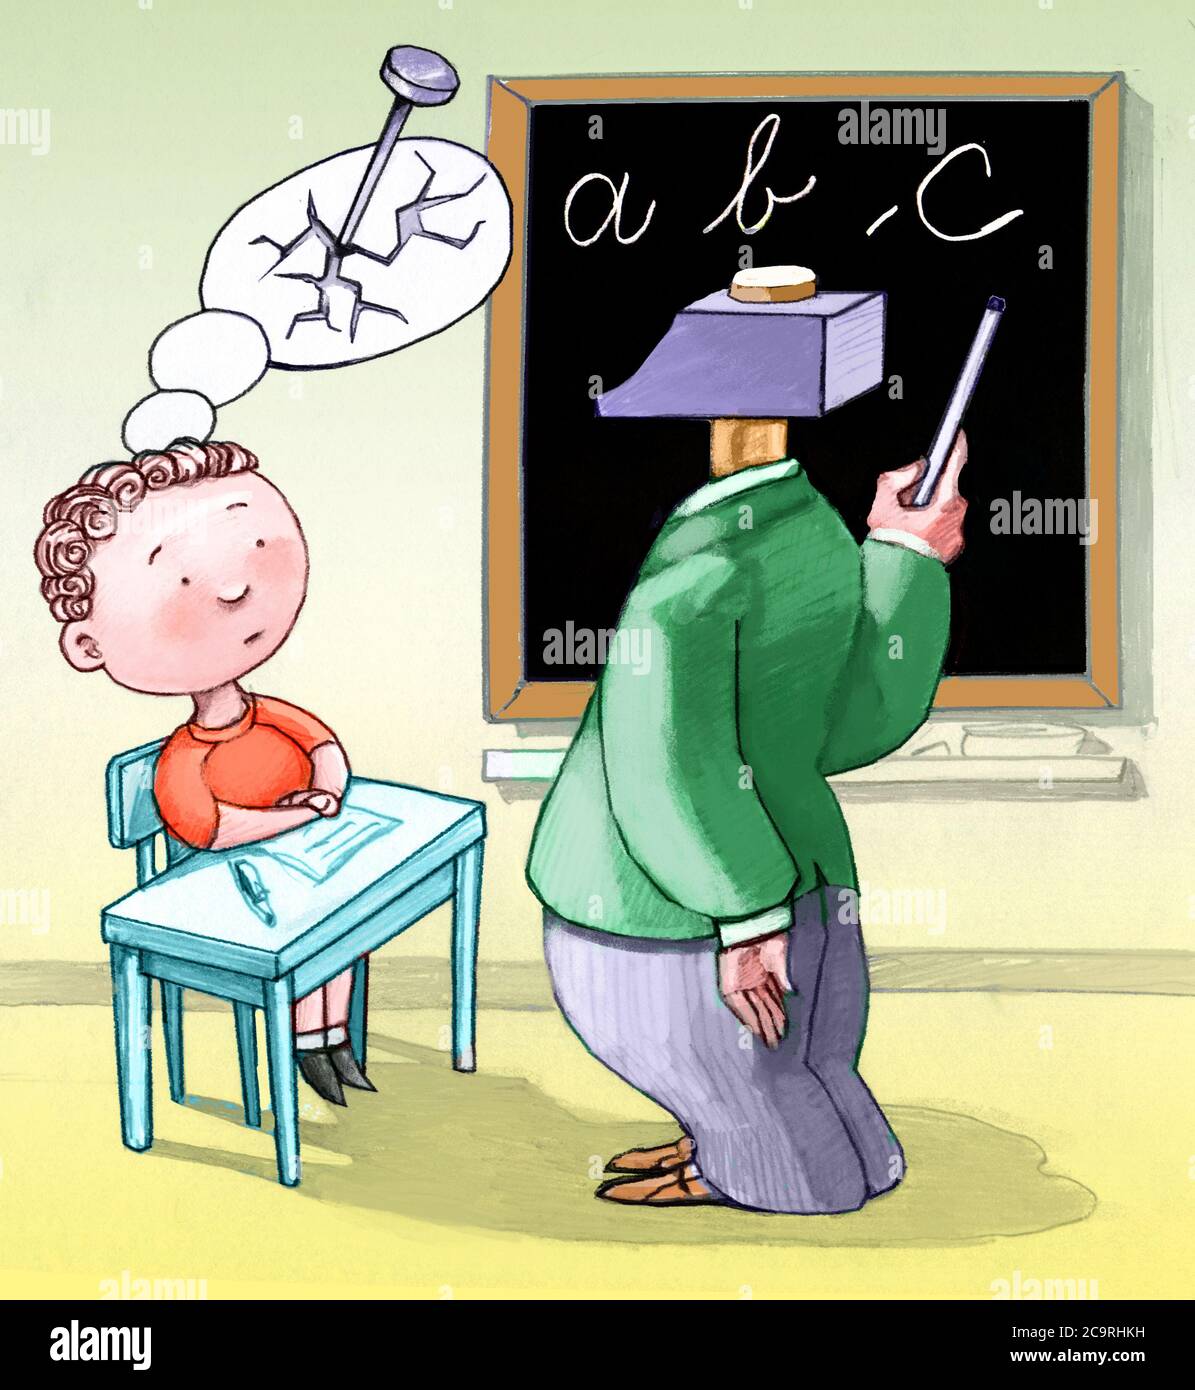 un alumno pequeño ve su sueño destruido por un maestro con una caricatura conceptual de cabeza de martillo sobre los niños y la educación Foto de stock